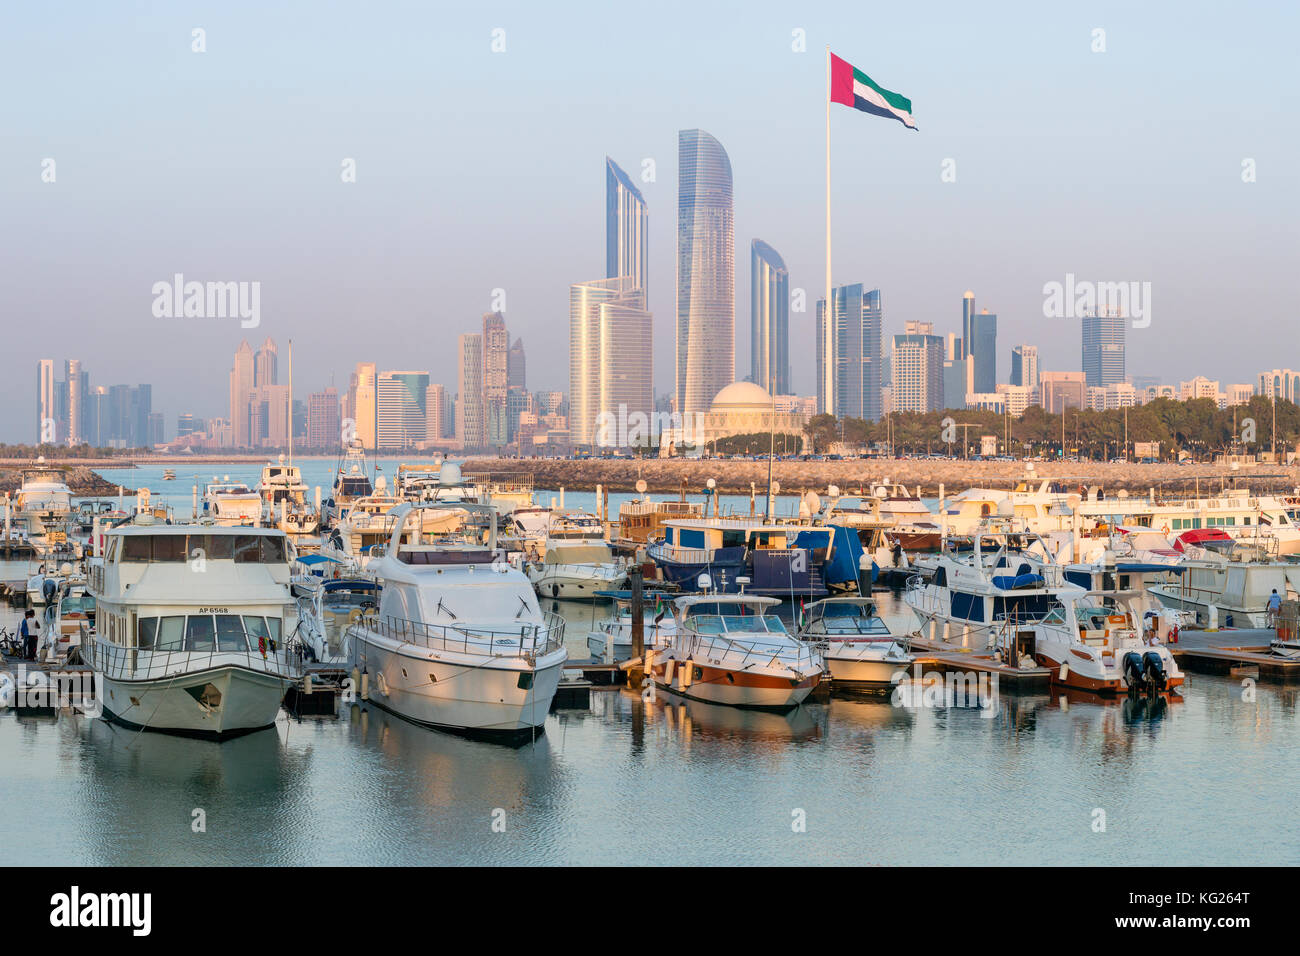 Modern city skyline and Marina, Abu Dhabi, United Arab Emirates, Middle East Stock Photo